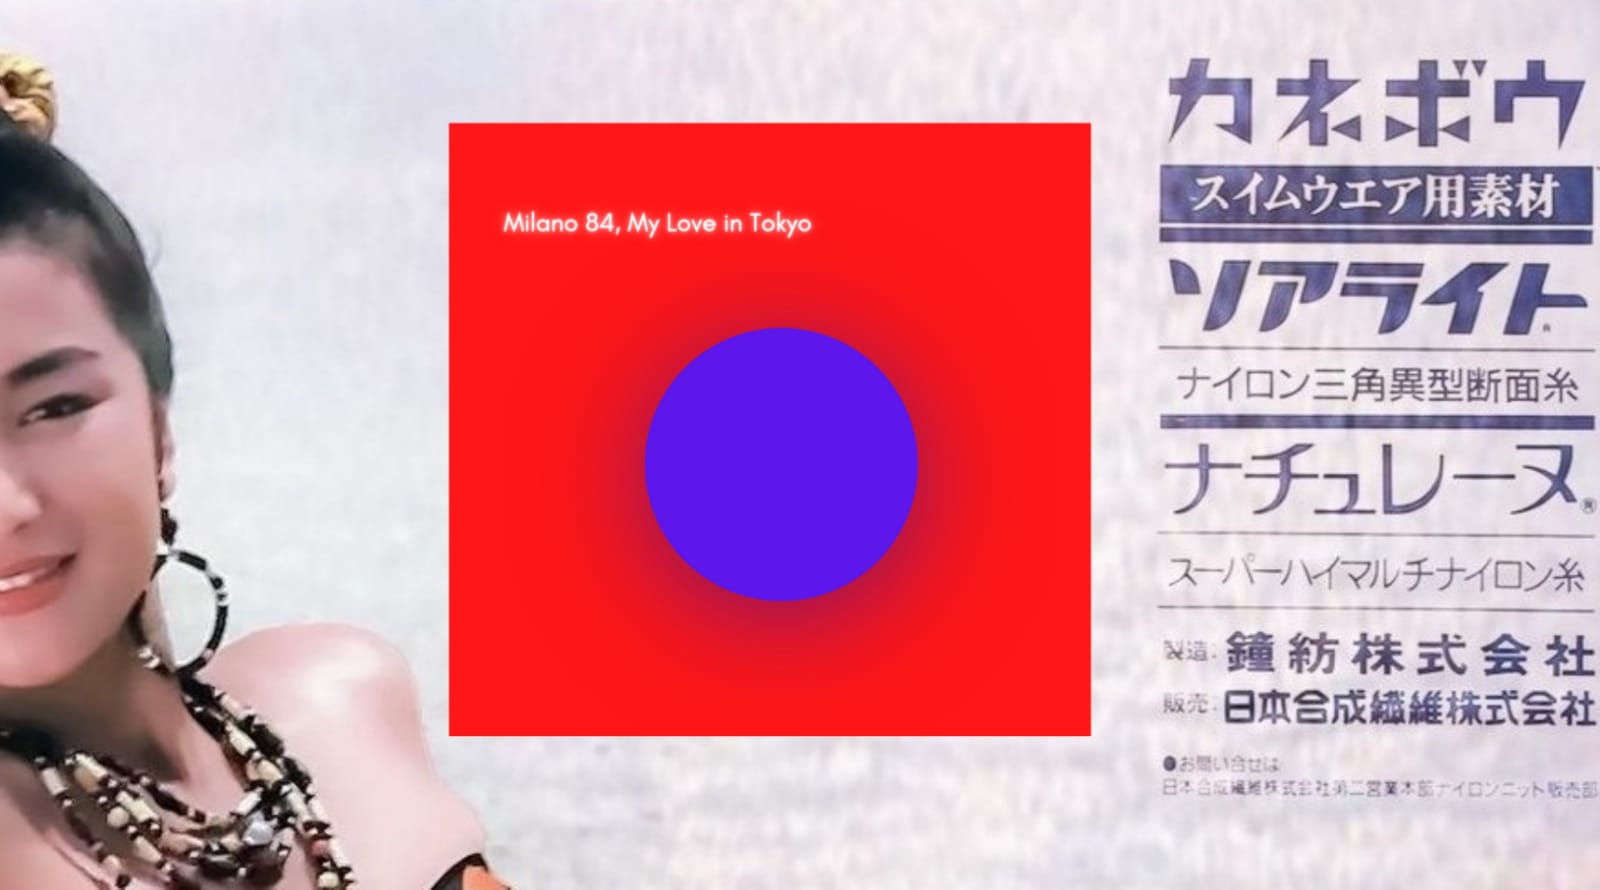 Milano 84 presentano “My Love in Tokyo“